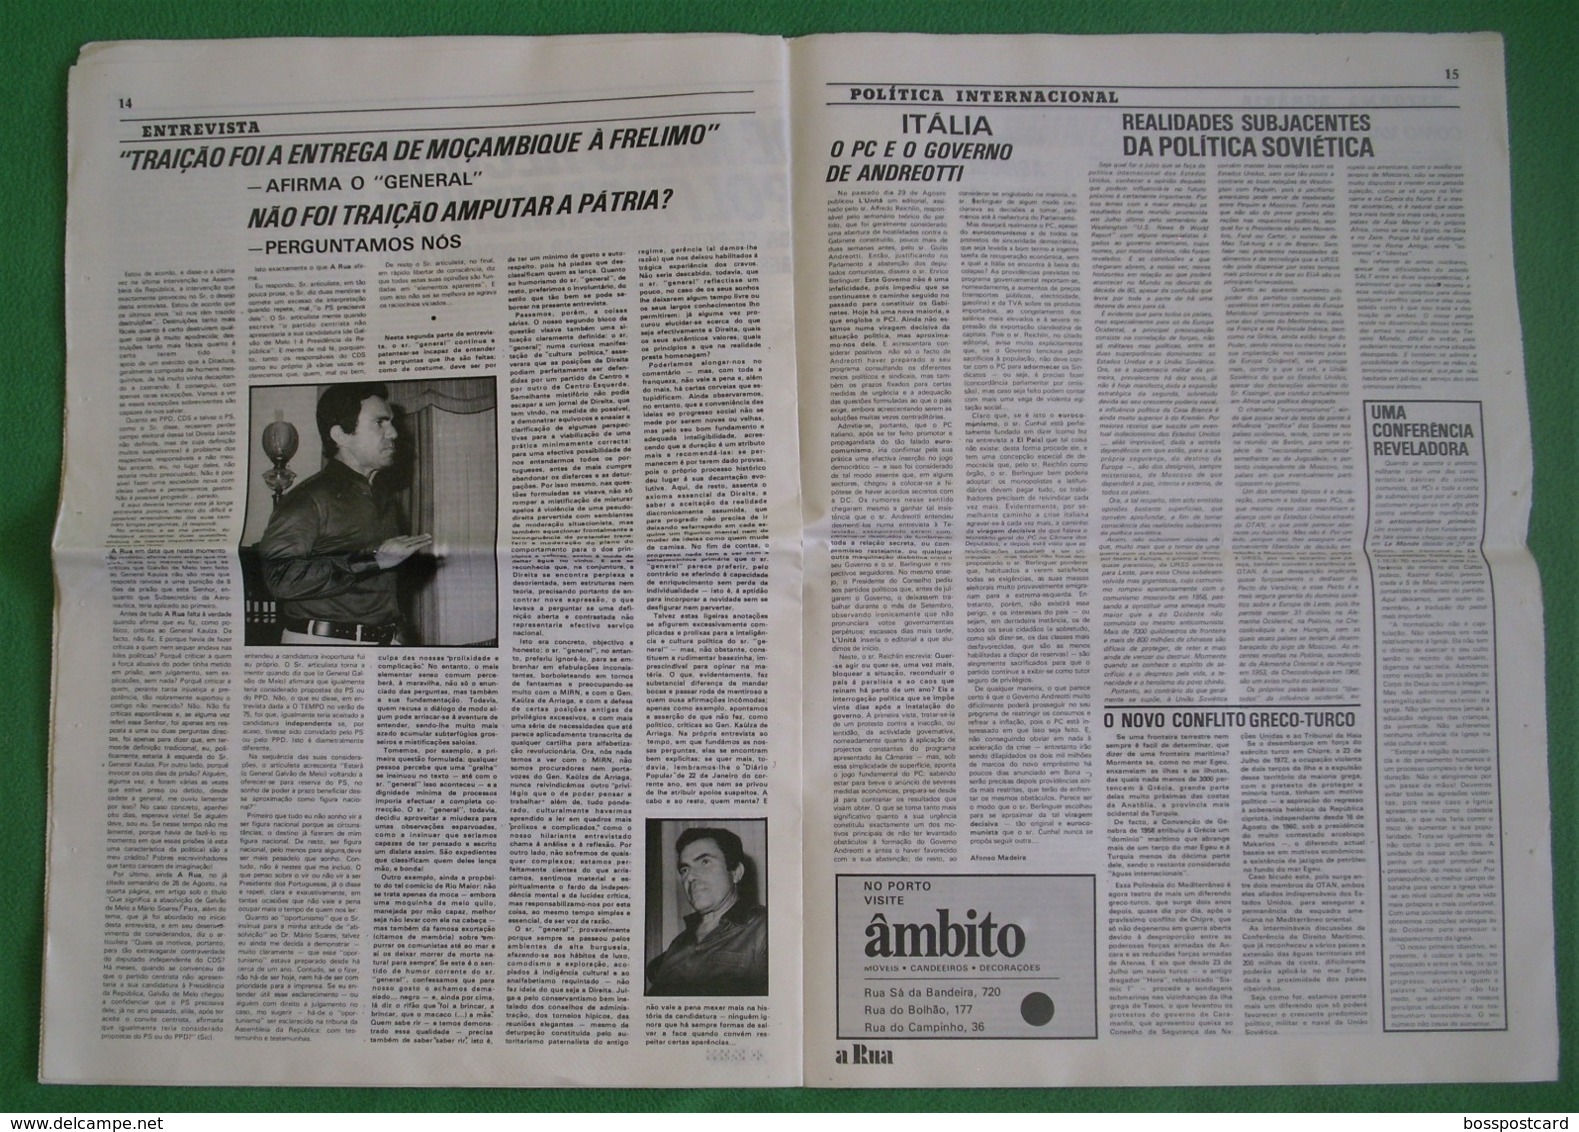 Lisboa -  Portugal -Jornal A Rua Nº 23 de Setembro de 1976 - República Portuguesa  Imprensa - 25 de Abril - PREC